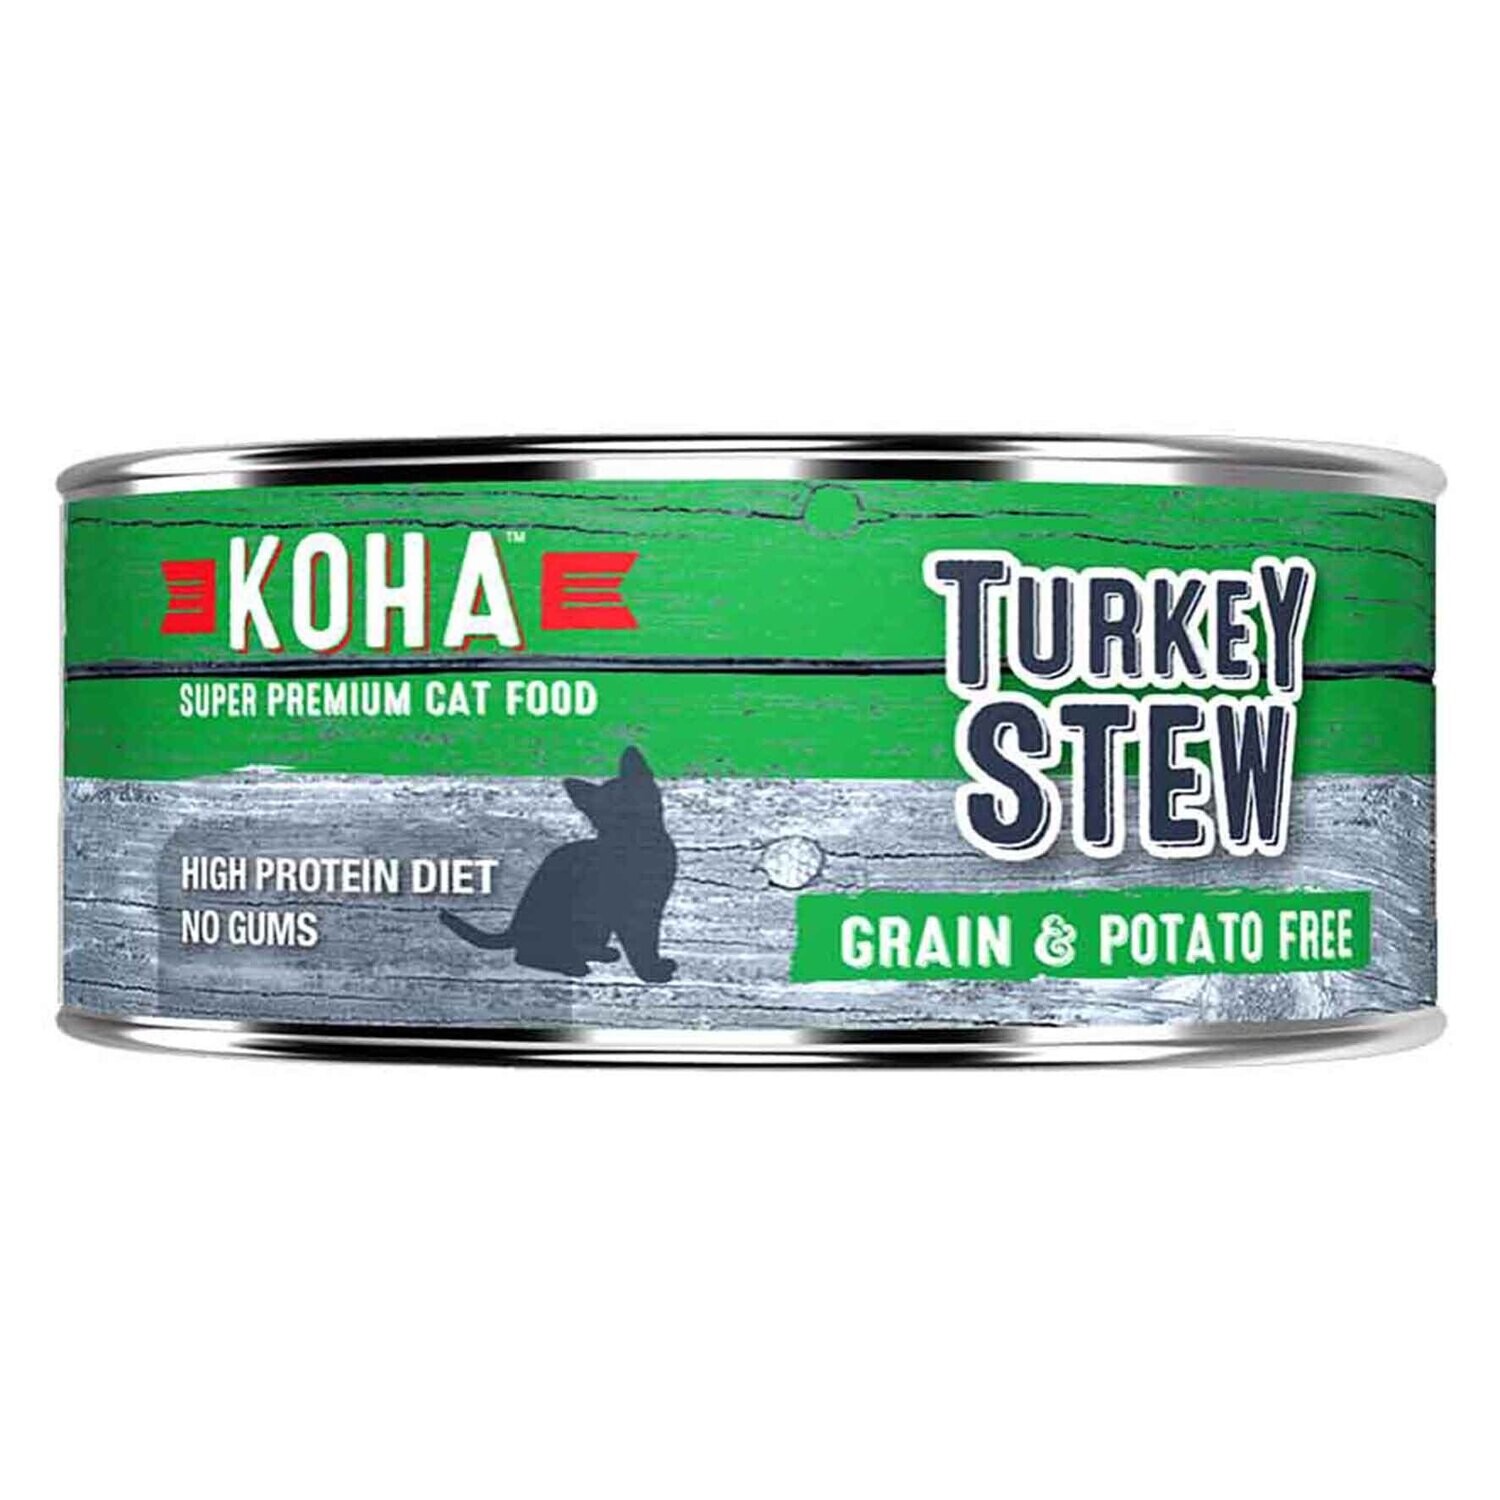 KOHA Turkey stew cat can food-5.5oz